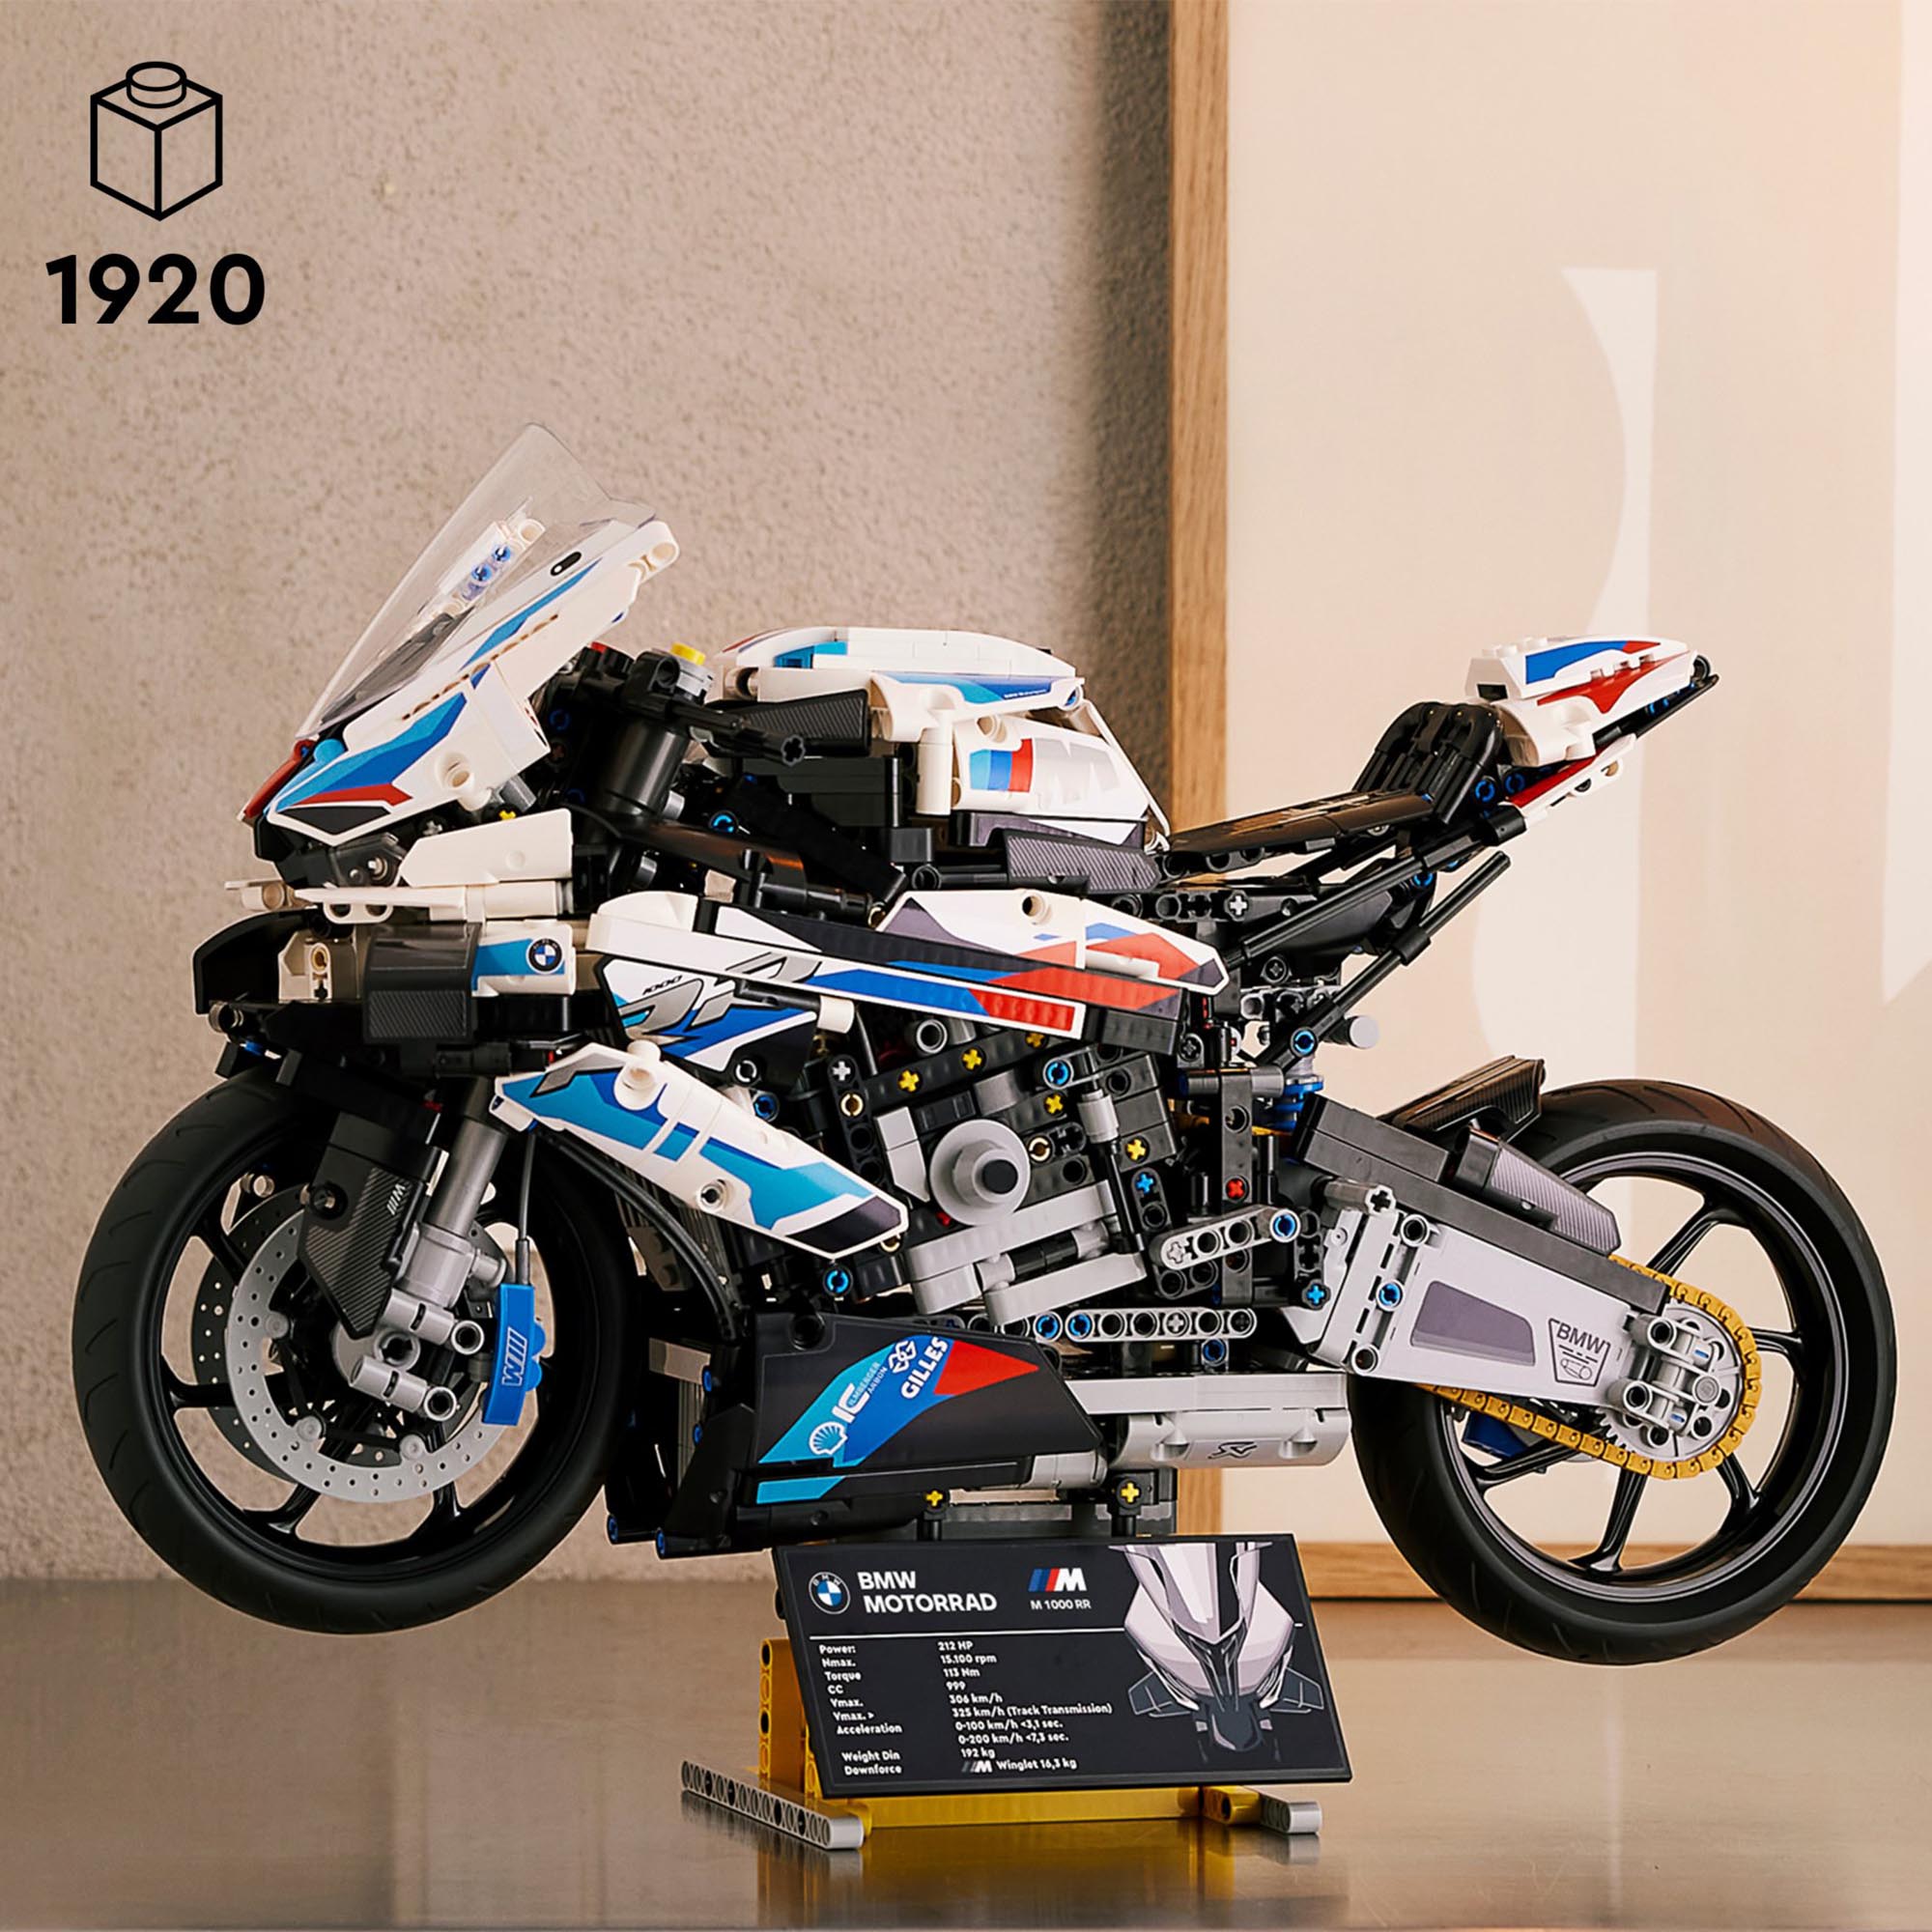 LEGO 42130 Technic BMW M 1000 RR, Moto per Adulti da Costruire, Idea Regalo da C 42130, , large